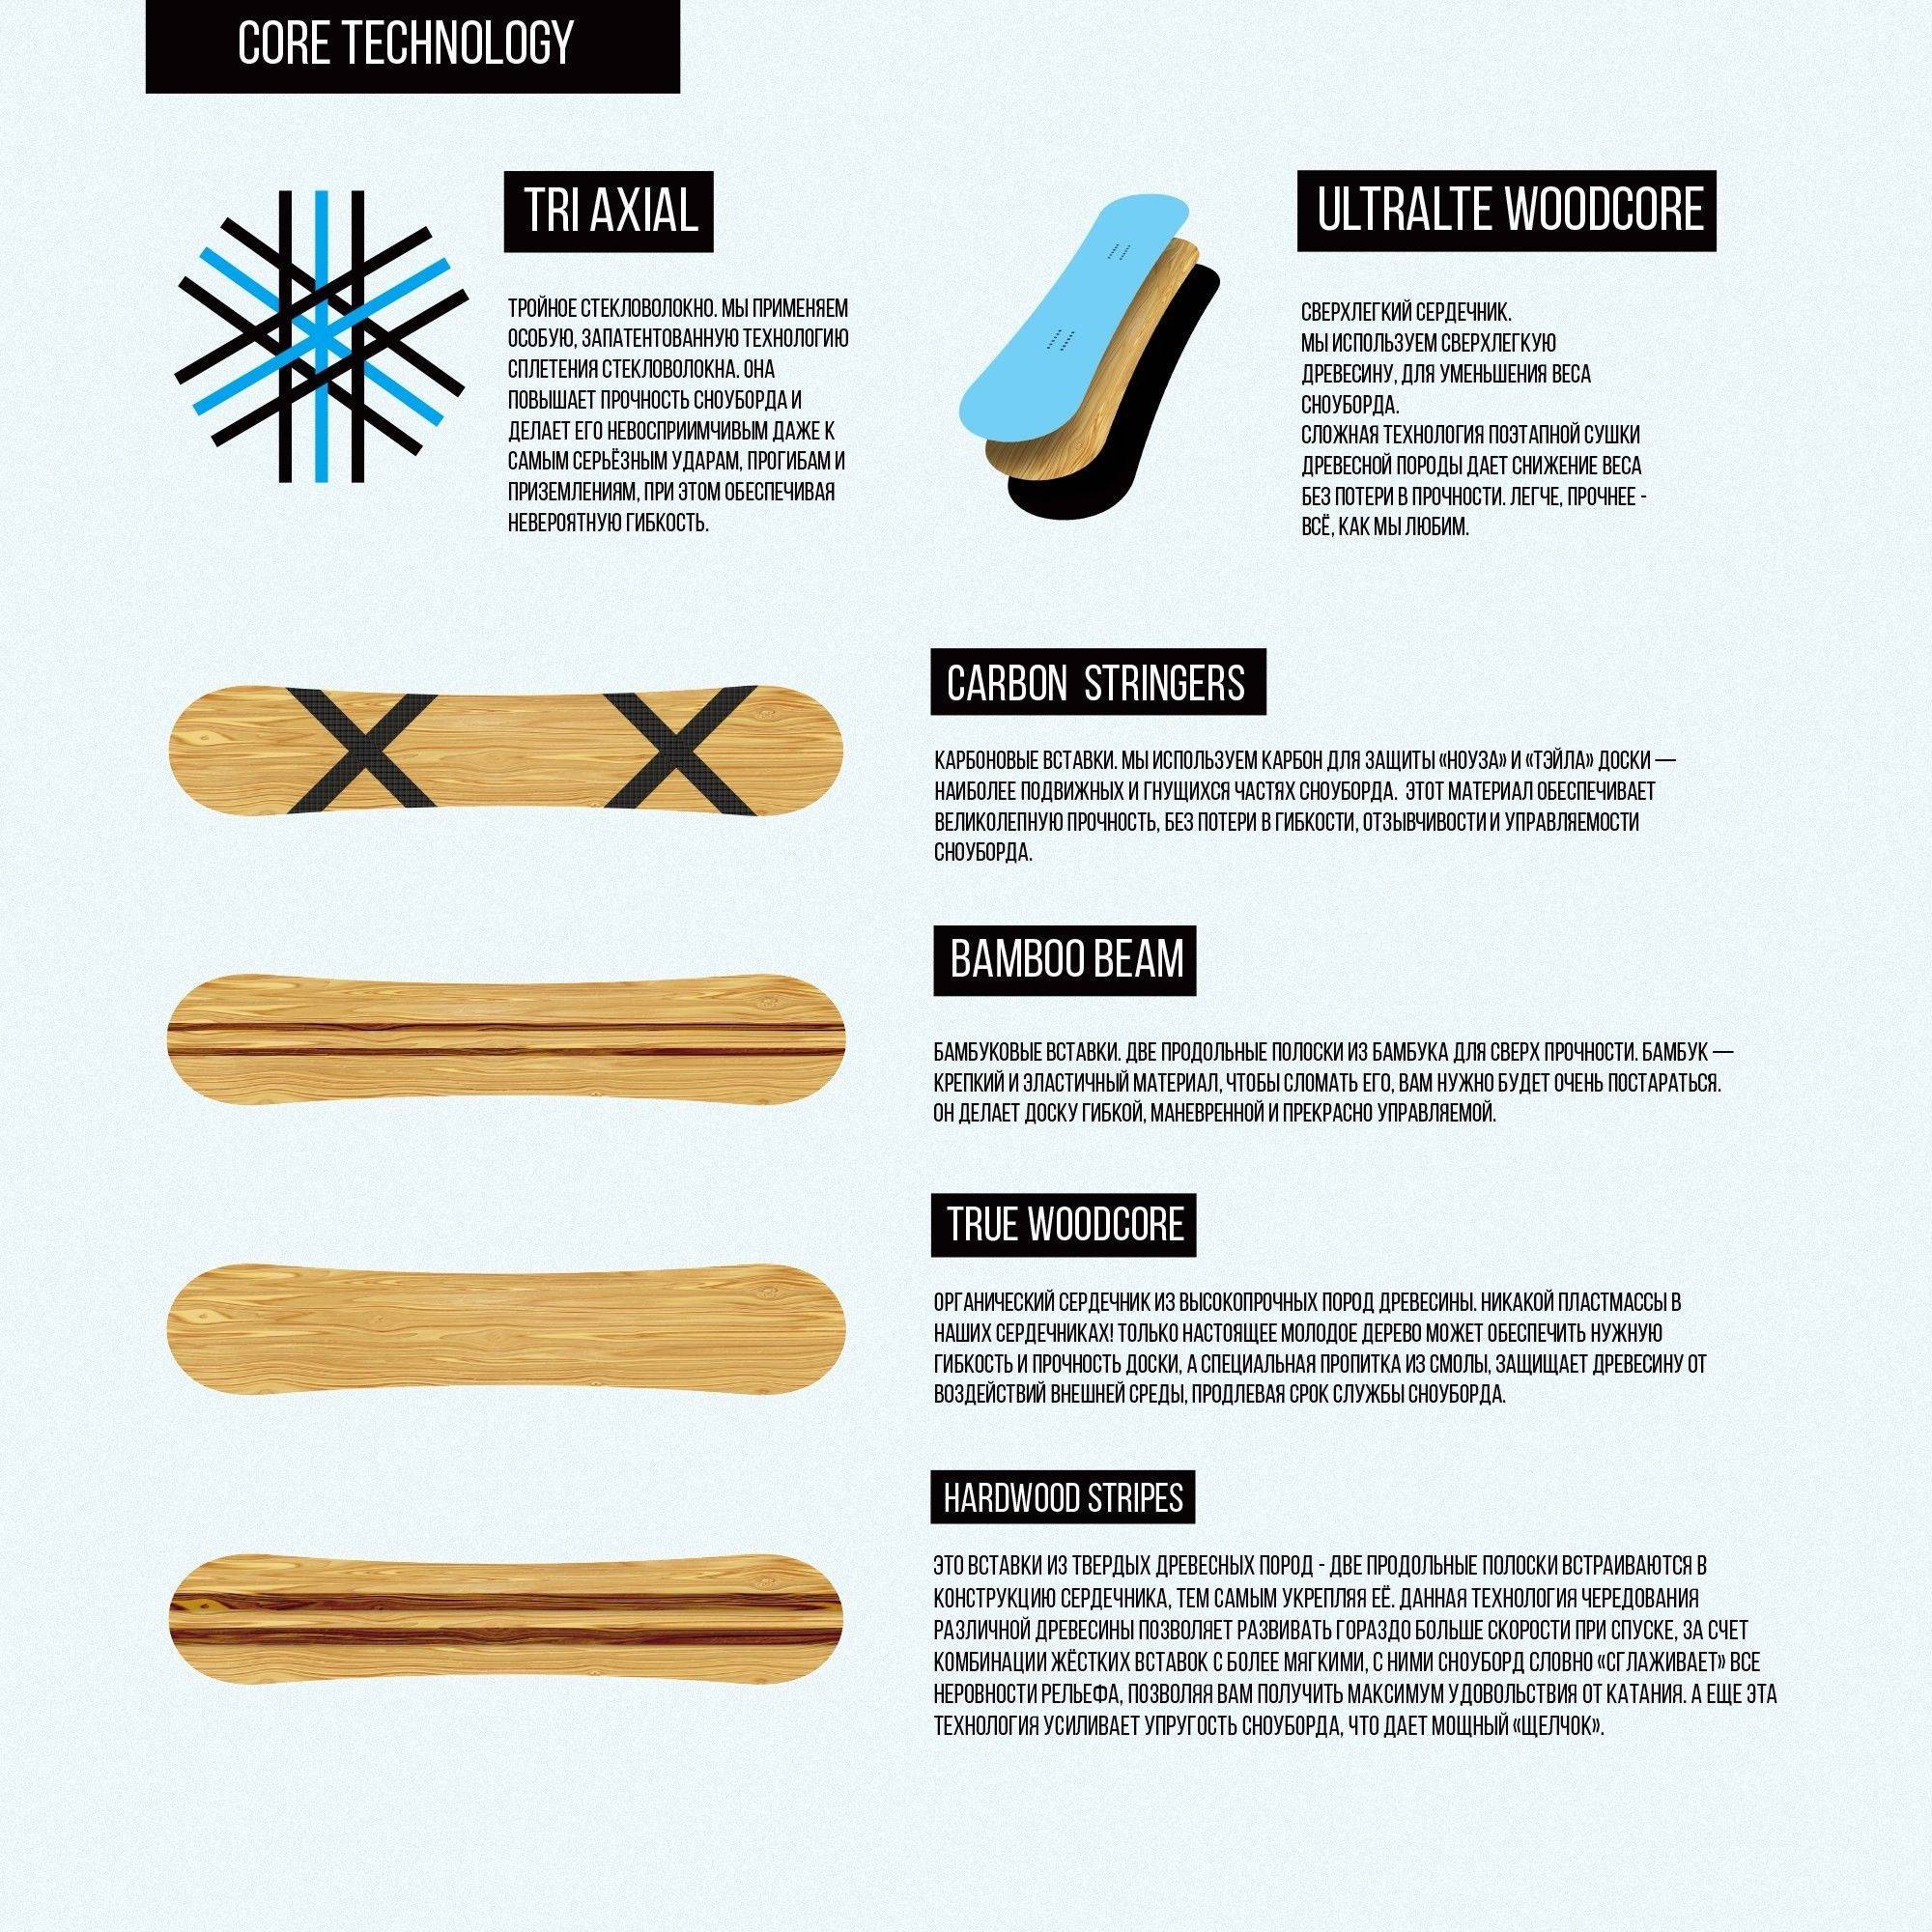 Как выбрать первый сноуборд | brodude.ru